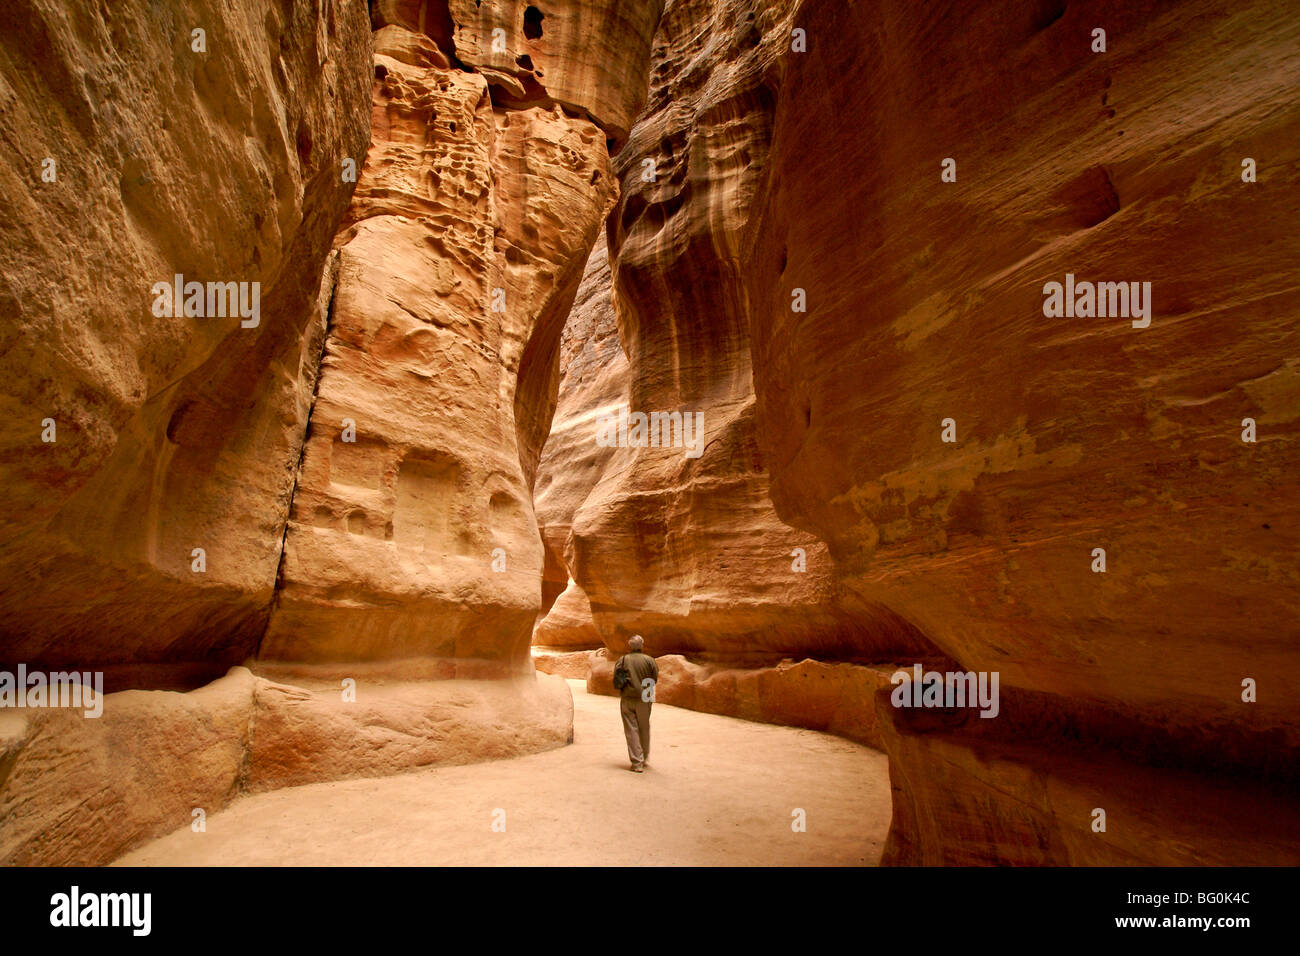 Tourist walking through the Siq, Petra, Jordan Stock Photo